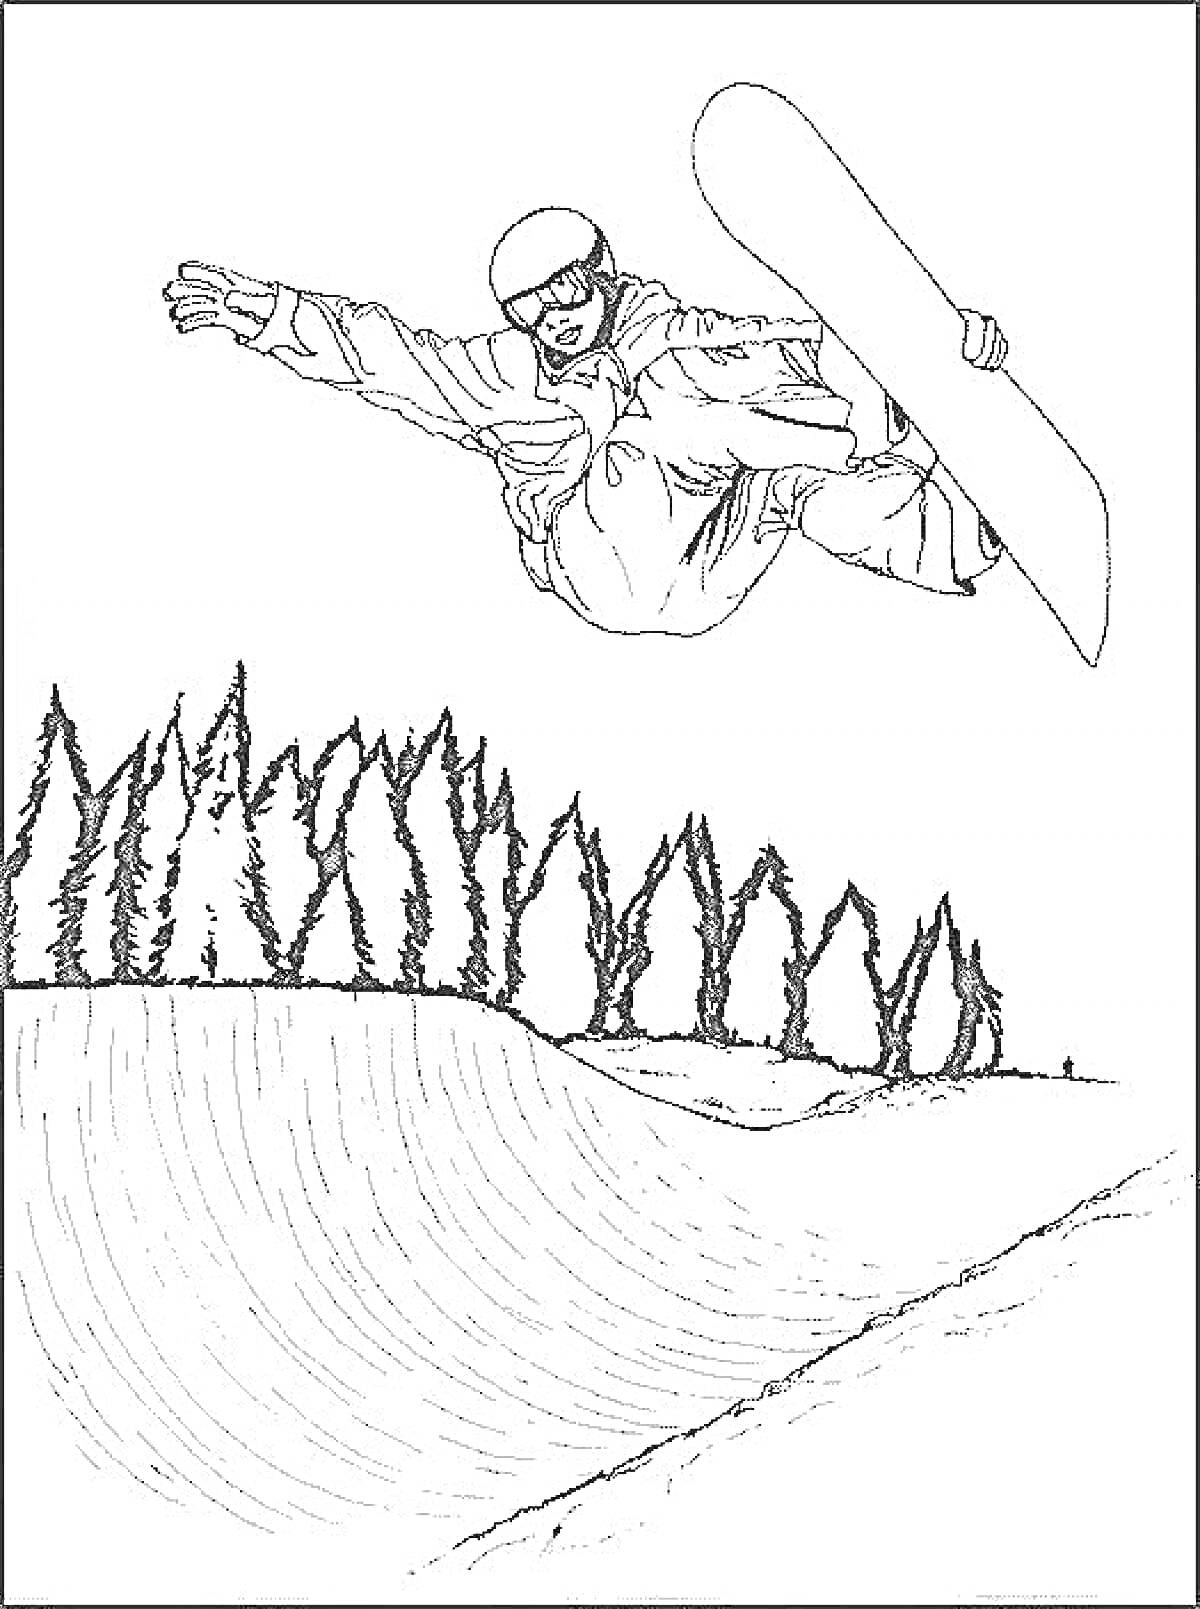 Сноубордист в полете над заснеженным склоном на фоне деревьев